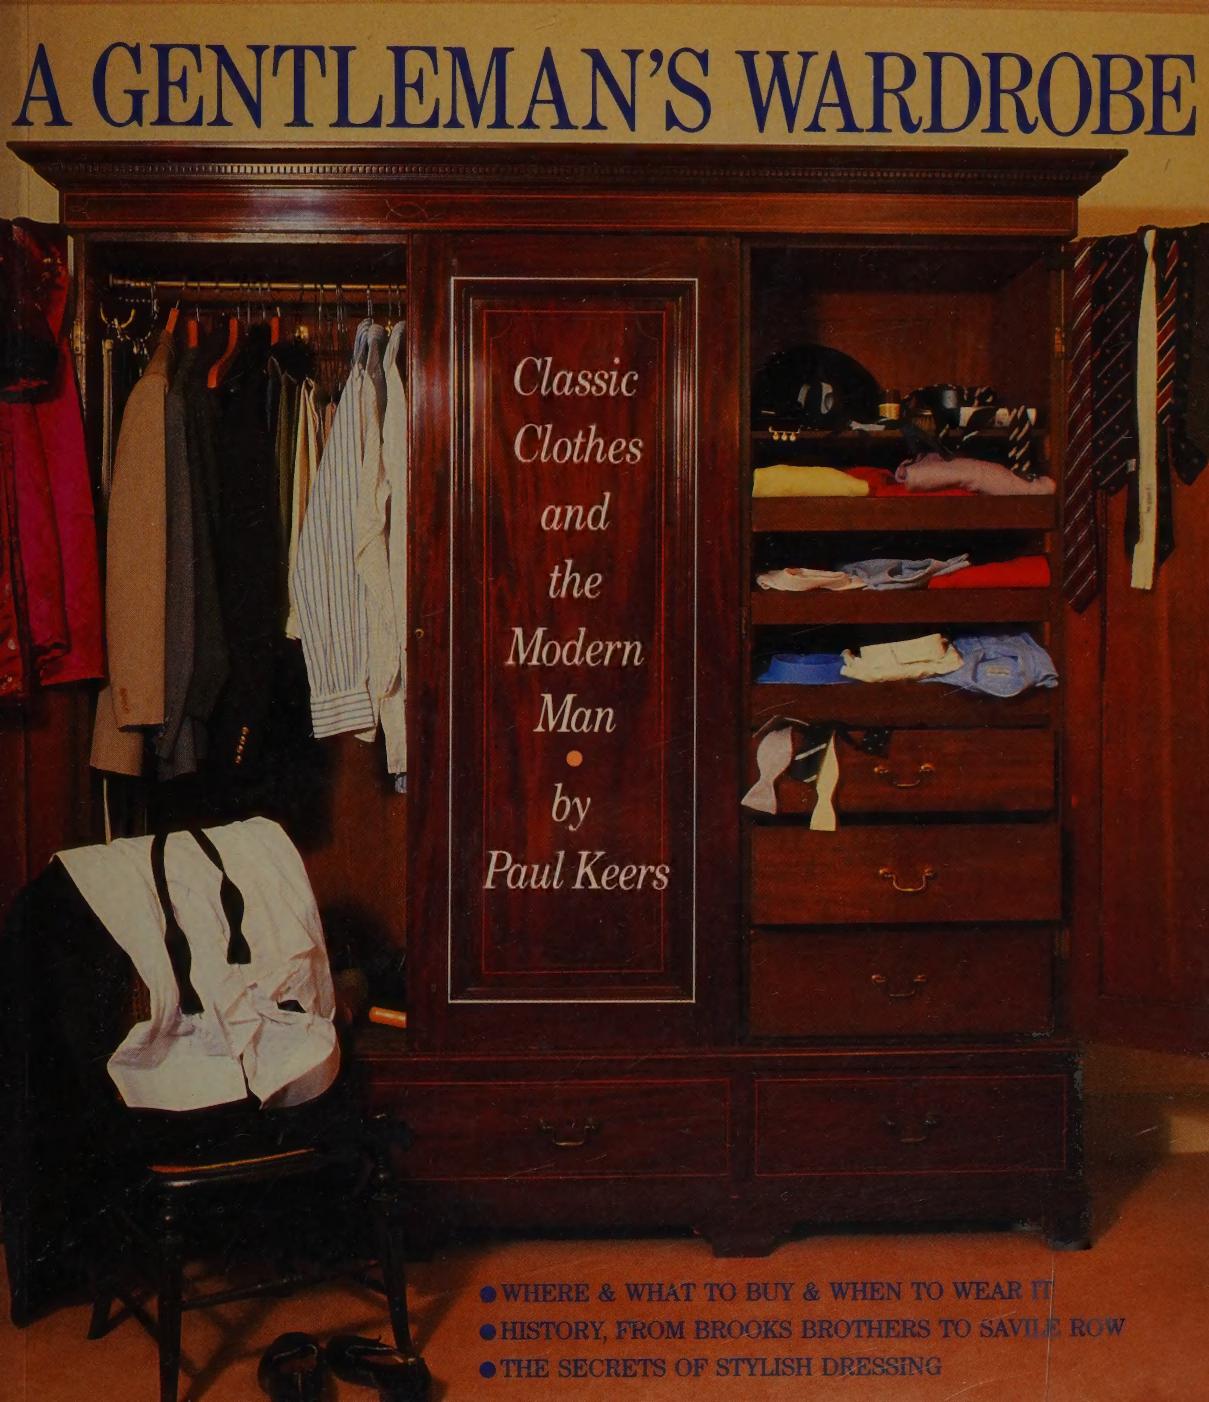 A Gentleman's Wardrobe by Paul Keers